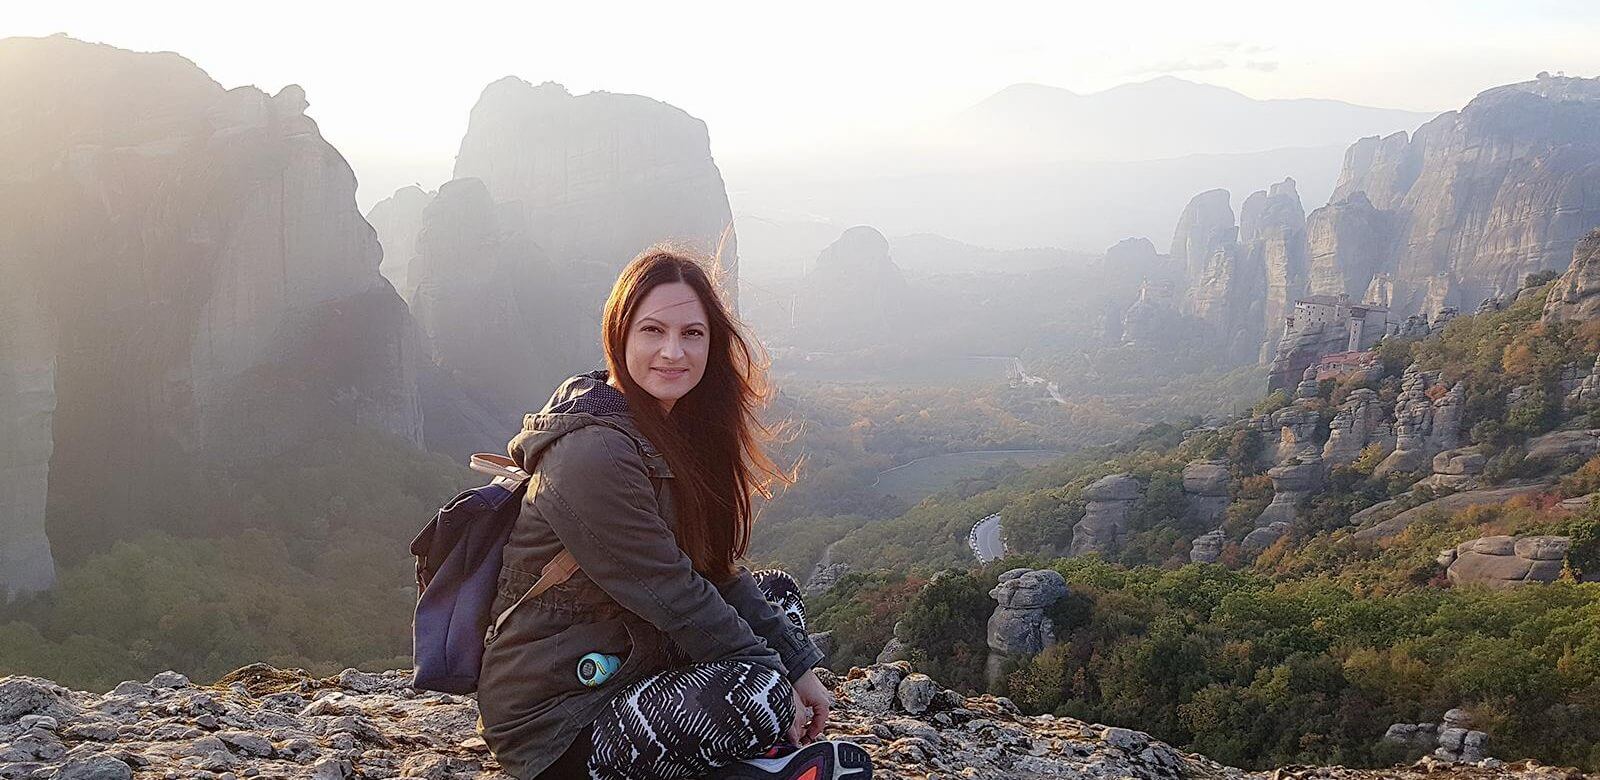 Η travel blogger Μαρία Κόφου μας μιλάει για τη ζωή της, τα ταξίδια και τις εμπειρίες της